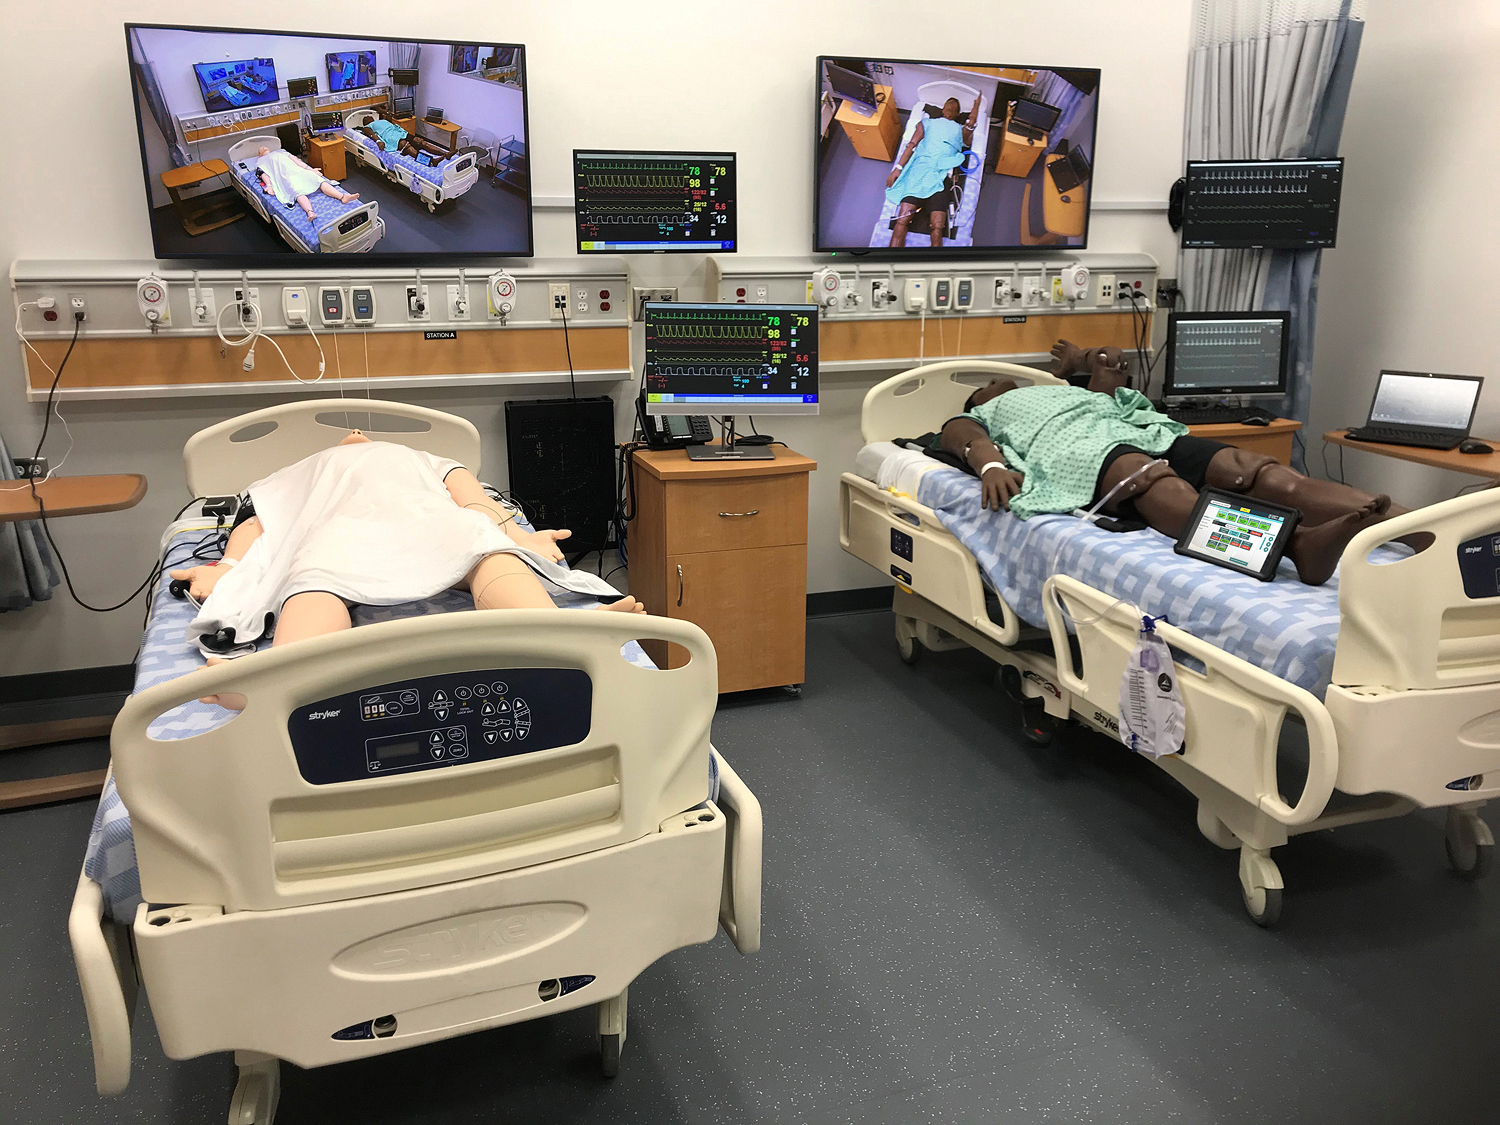 Las entradas HDMI en la cabecera y la pared de la estación del laboratorio proporcionan conectividad AV para el simulador de paciente humano, equipamiento médico, ordenadores y fuentes portátiles. Los codificadores NAV E 101 reciben alimentación a través de PoE+, dejando así salidas libres para que puedan ser utilizadas por estos dispositivos estándar en la estación.